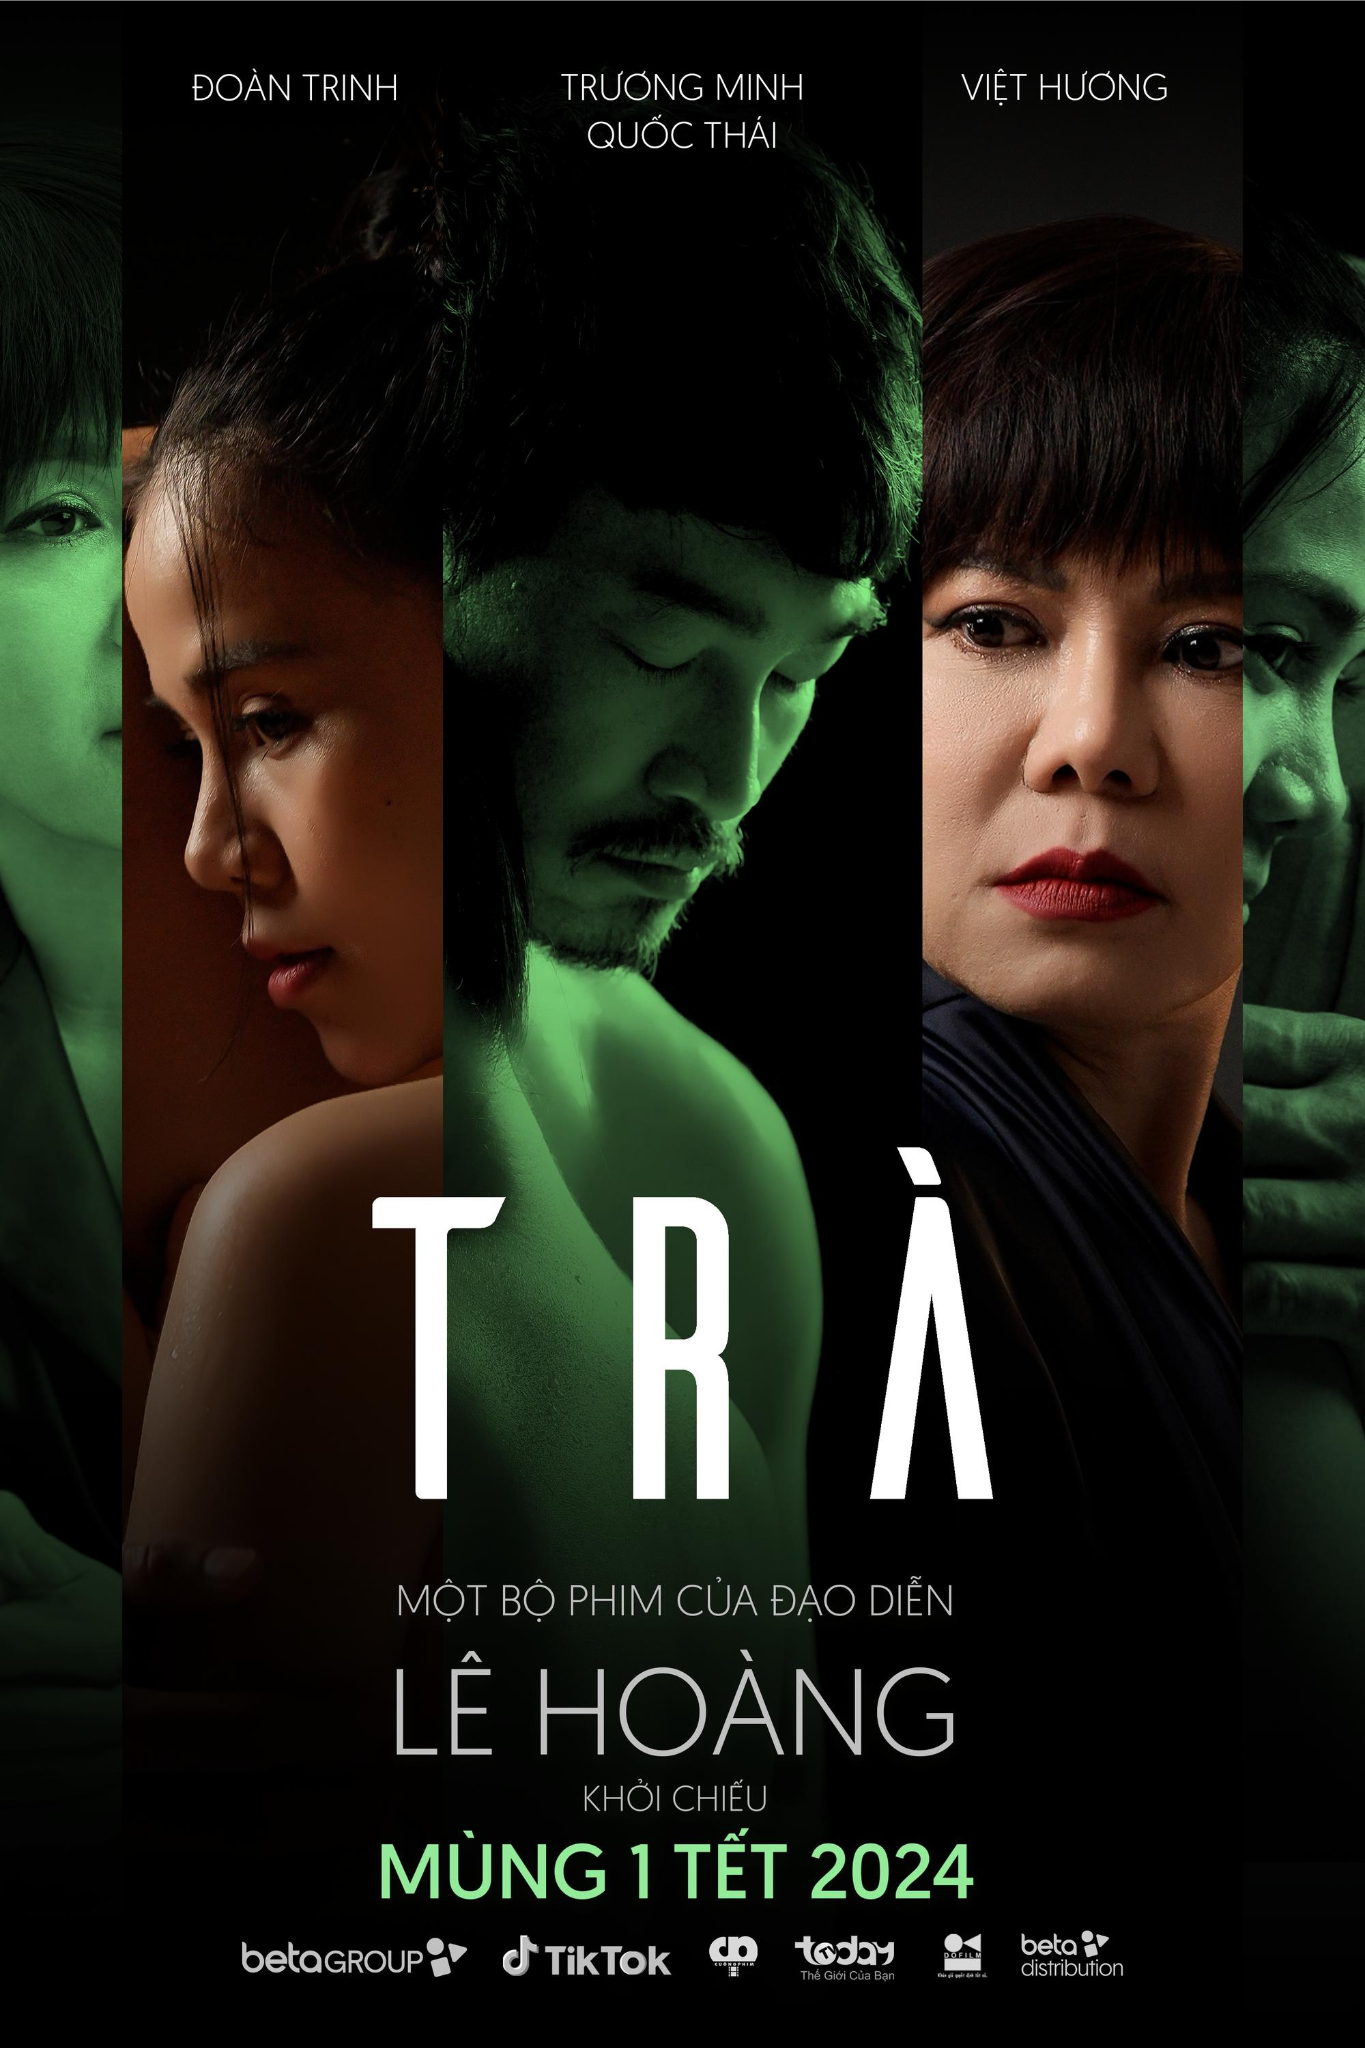 Phim điện ảnh Trà bất ngờ công bố teaser poster